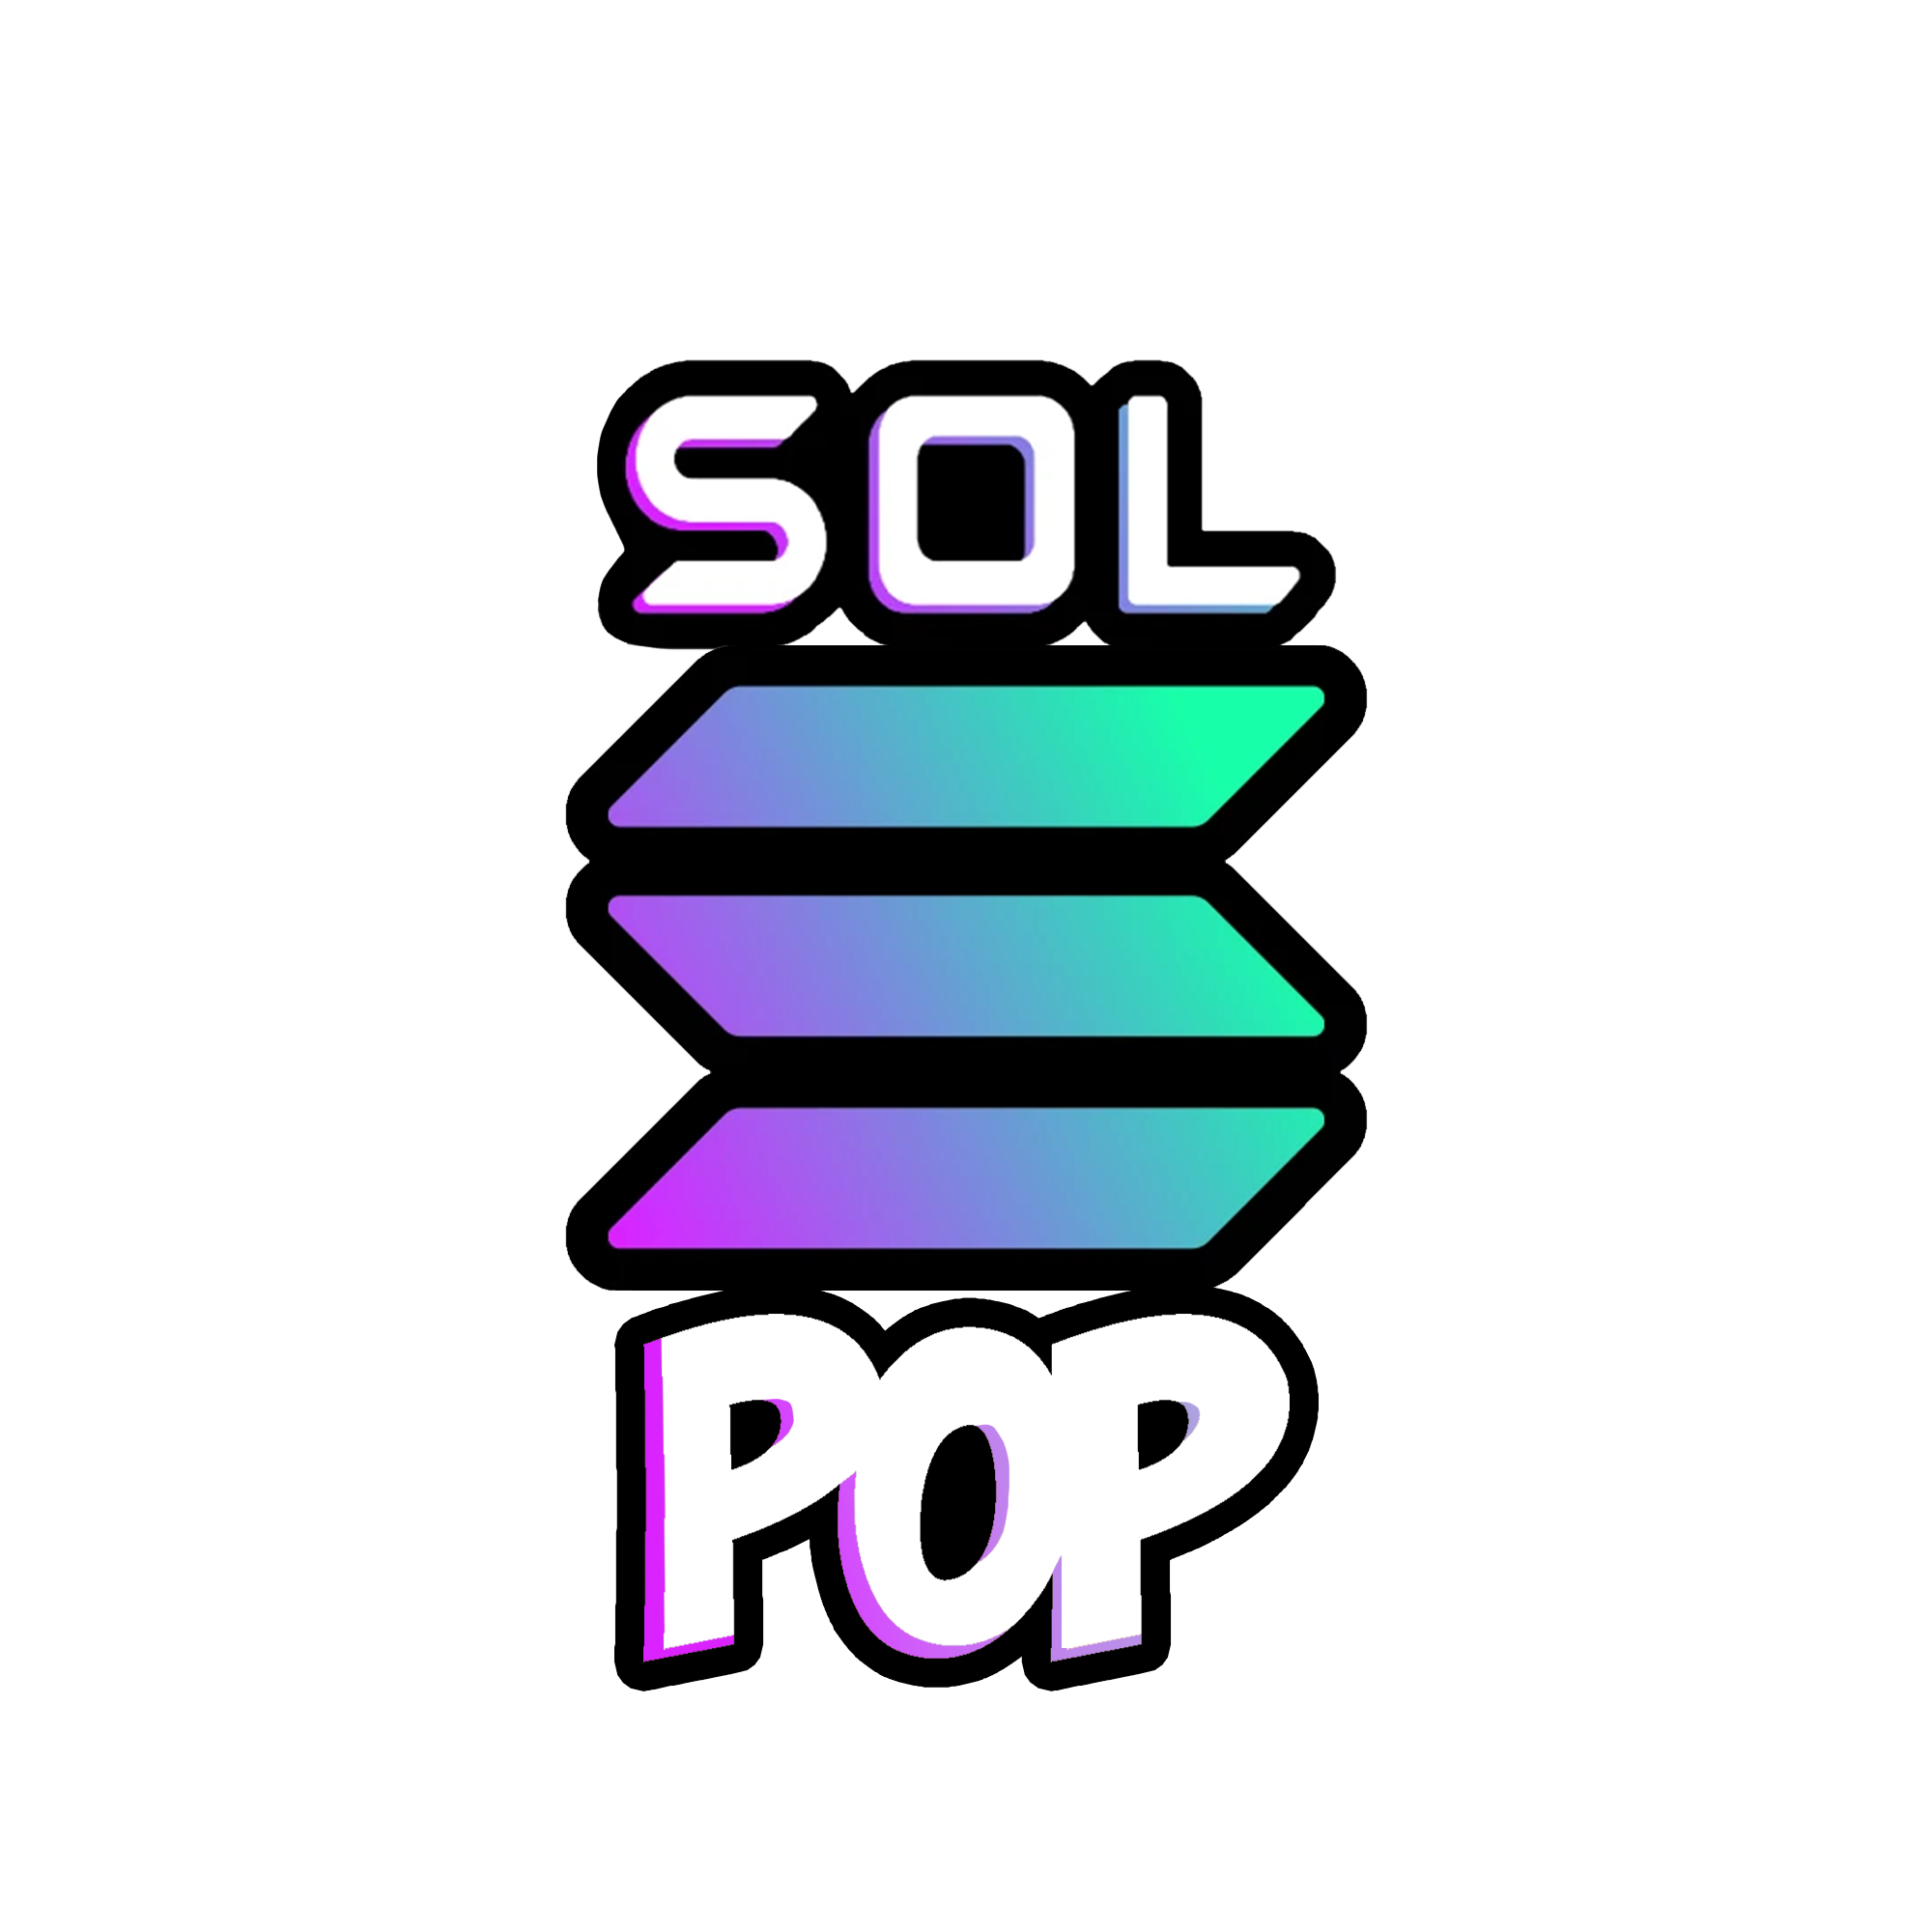 SOL POP